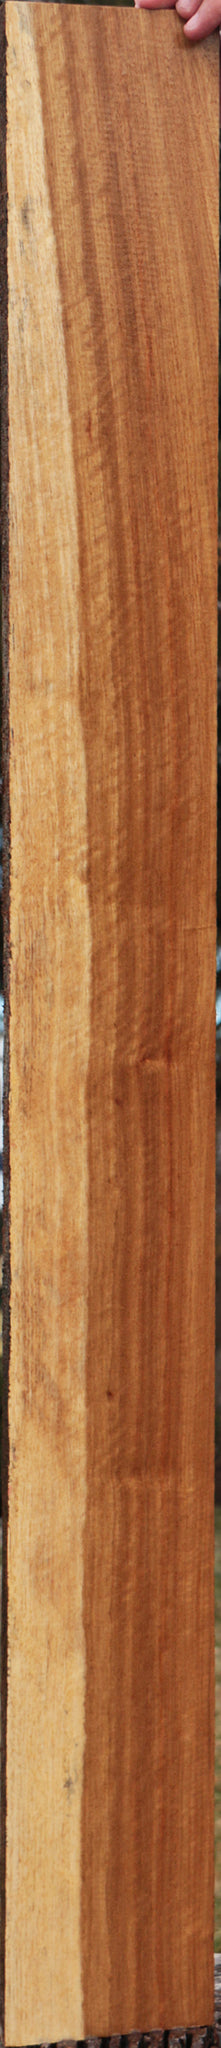 Tasmanian Blackwood Lumber